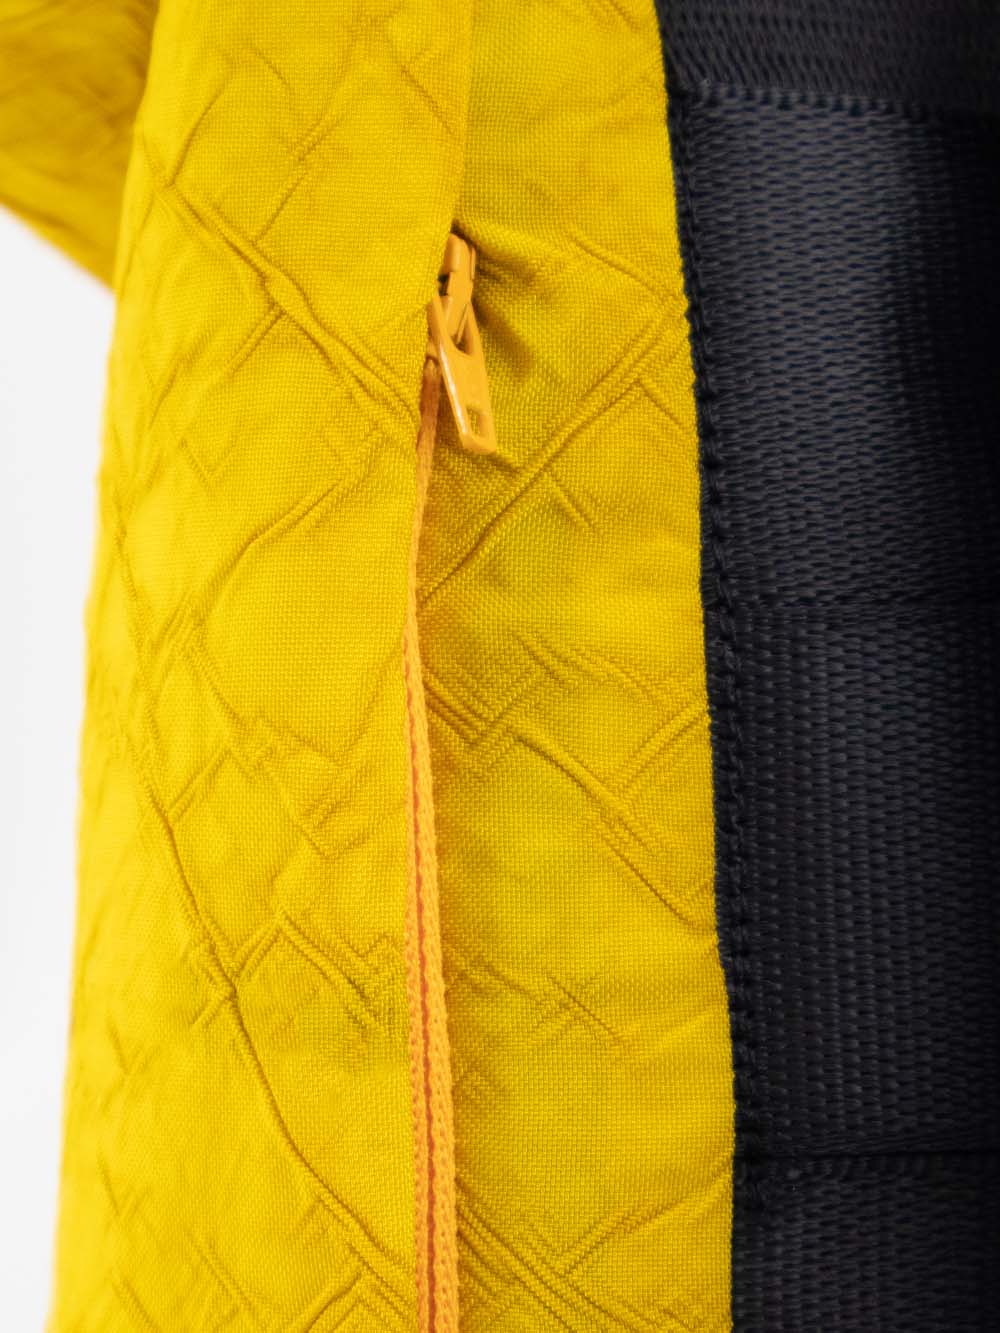 Airpaq sac à dos roll top - couleur jaune/blanc 